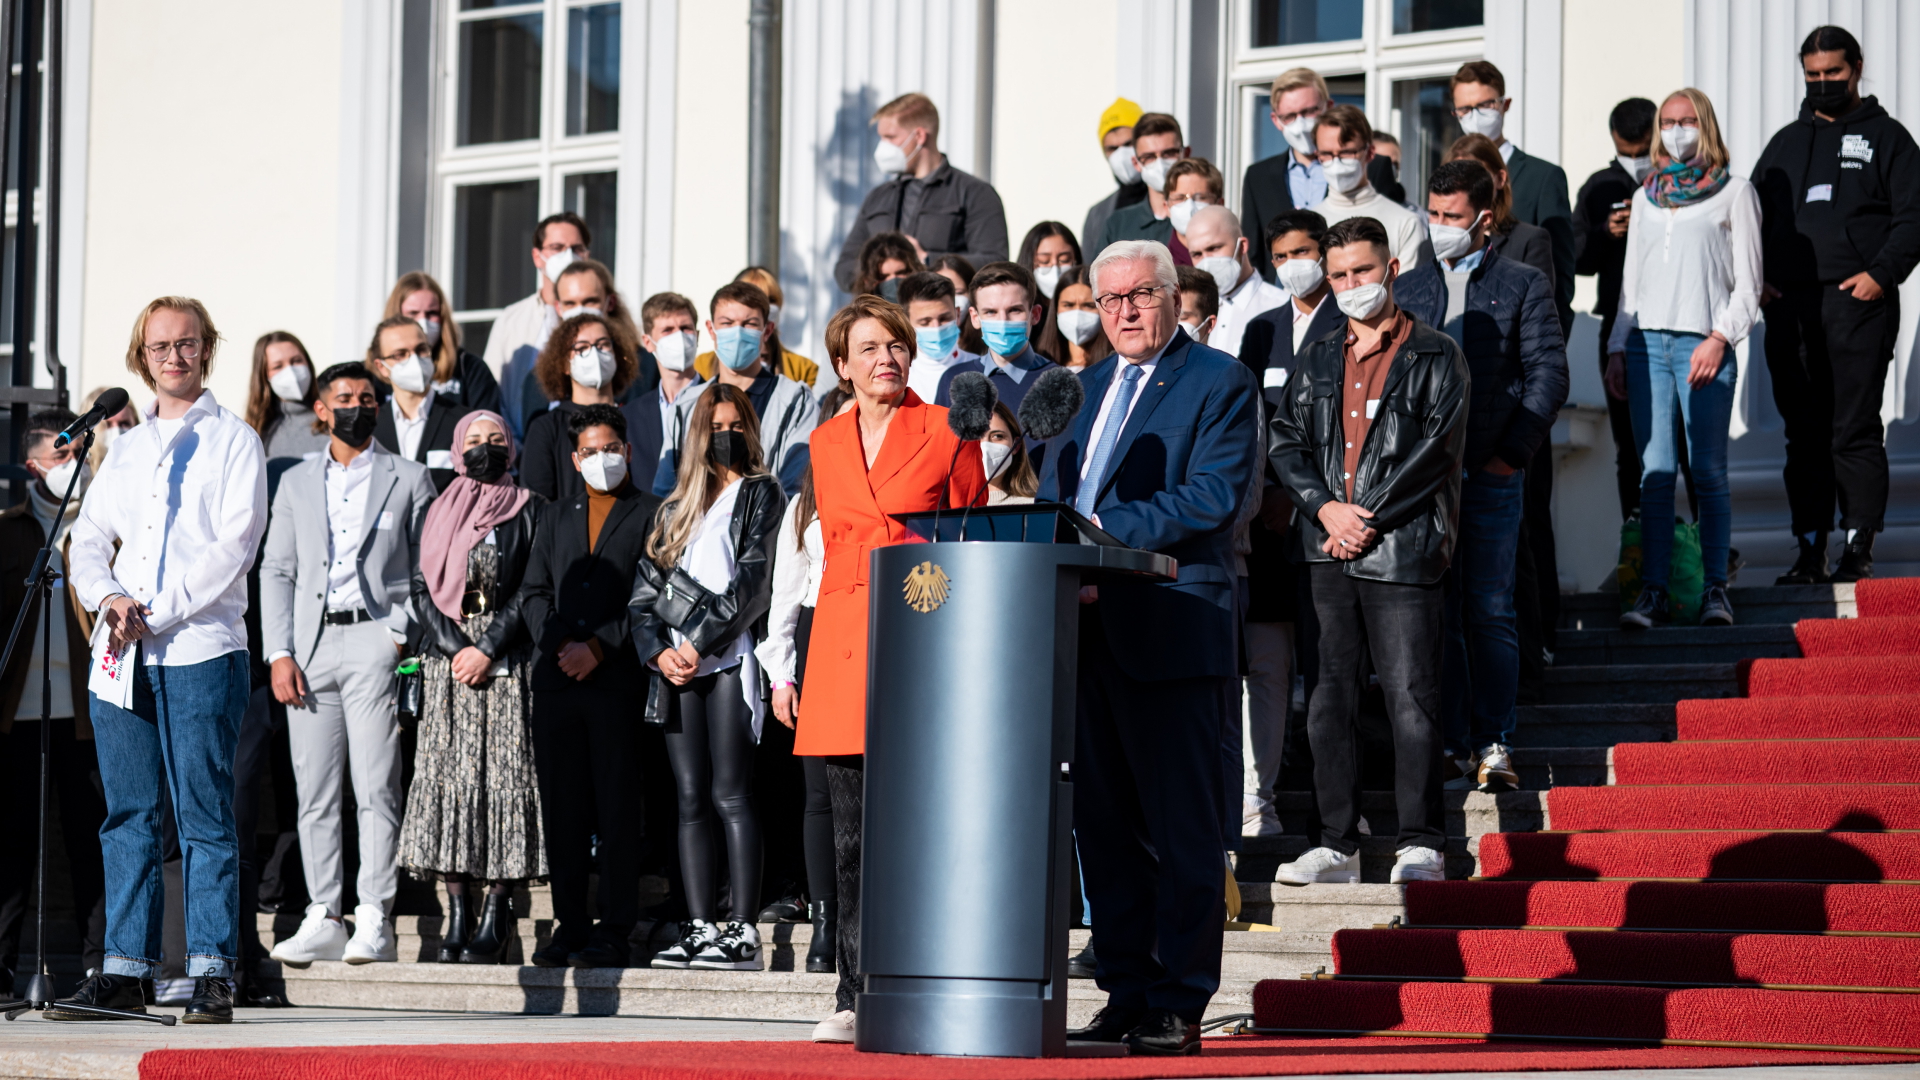  Bundespräsident Frank-Walter Steinmeier und seine Frau Elke Büdenbender begrüßen die Teilnehmer beim Aktionstag "Takeover Bellevue" vor dem Schloss Bellevue. 